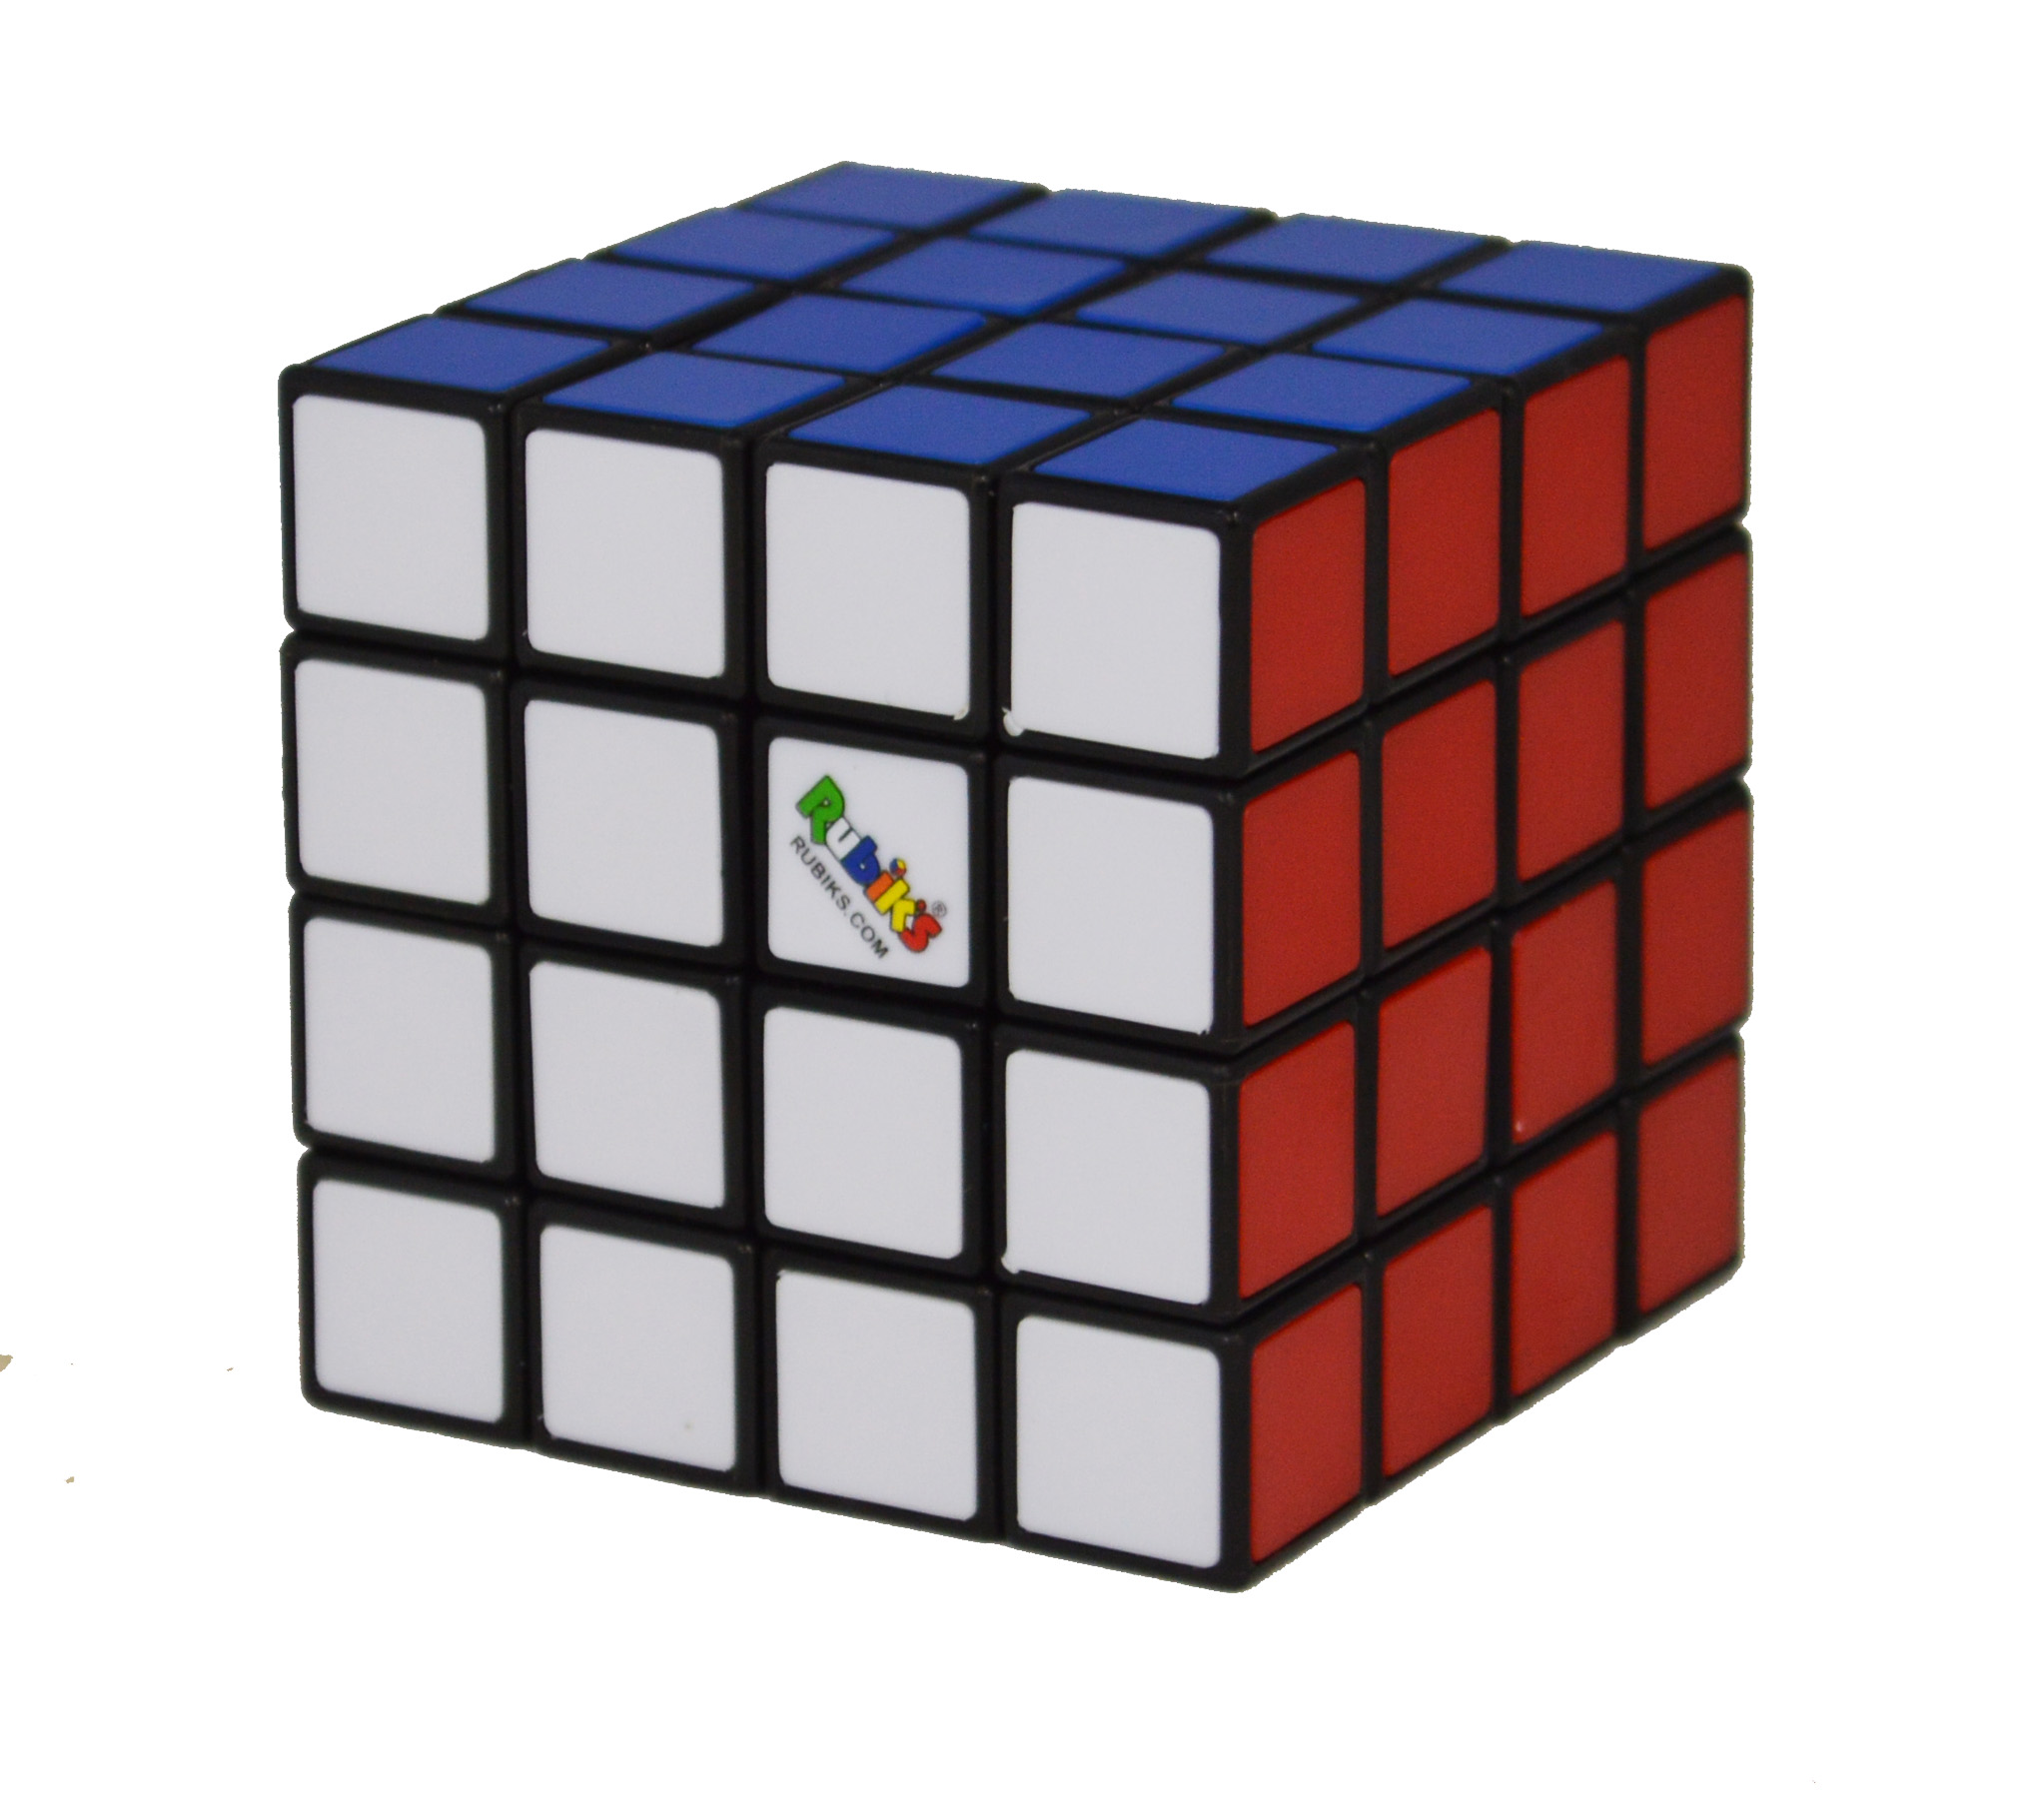  ルービックキューブ4×4 ver.2.1【公式ライセンス商品】